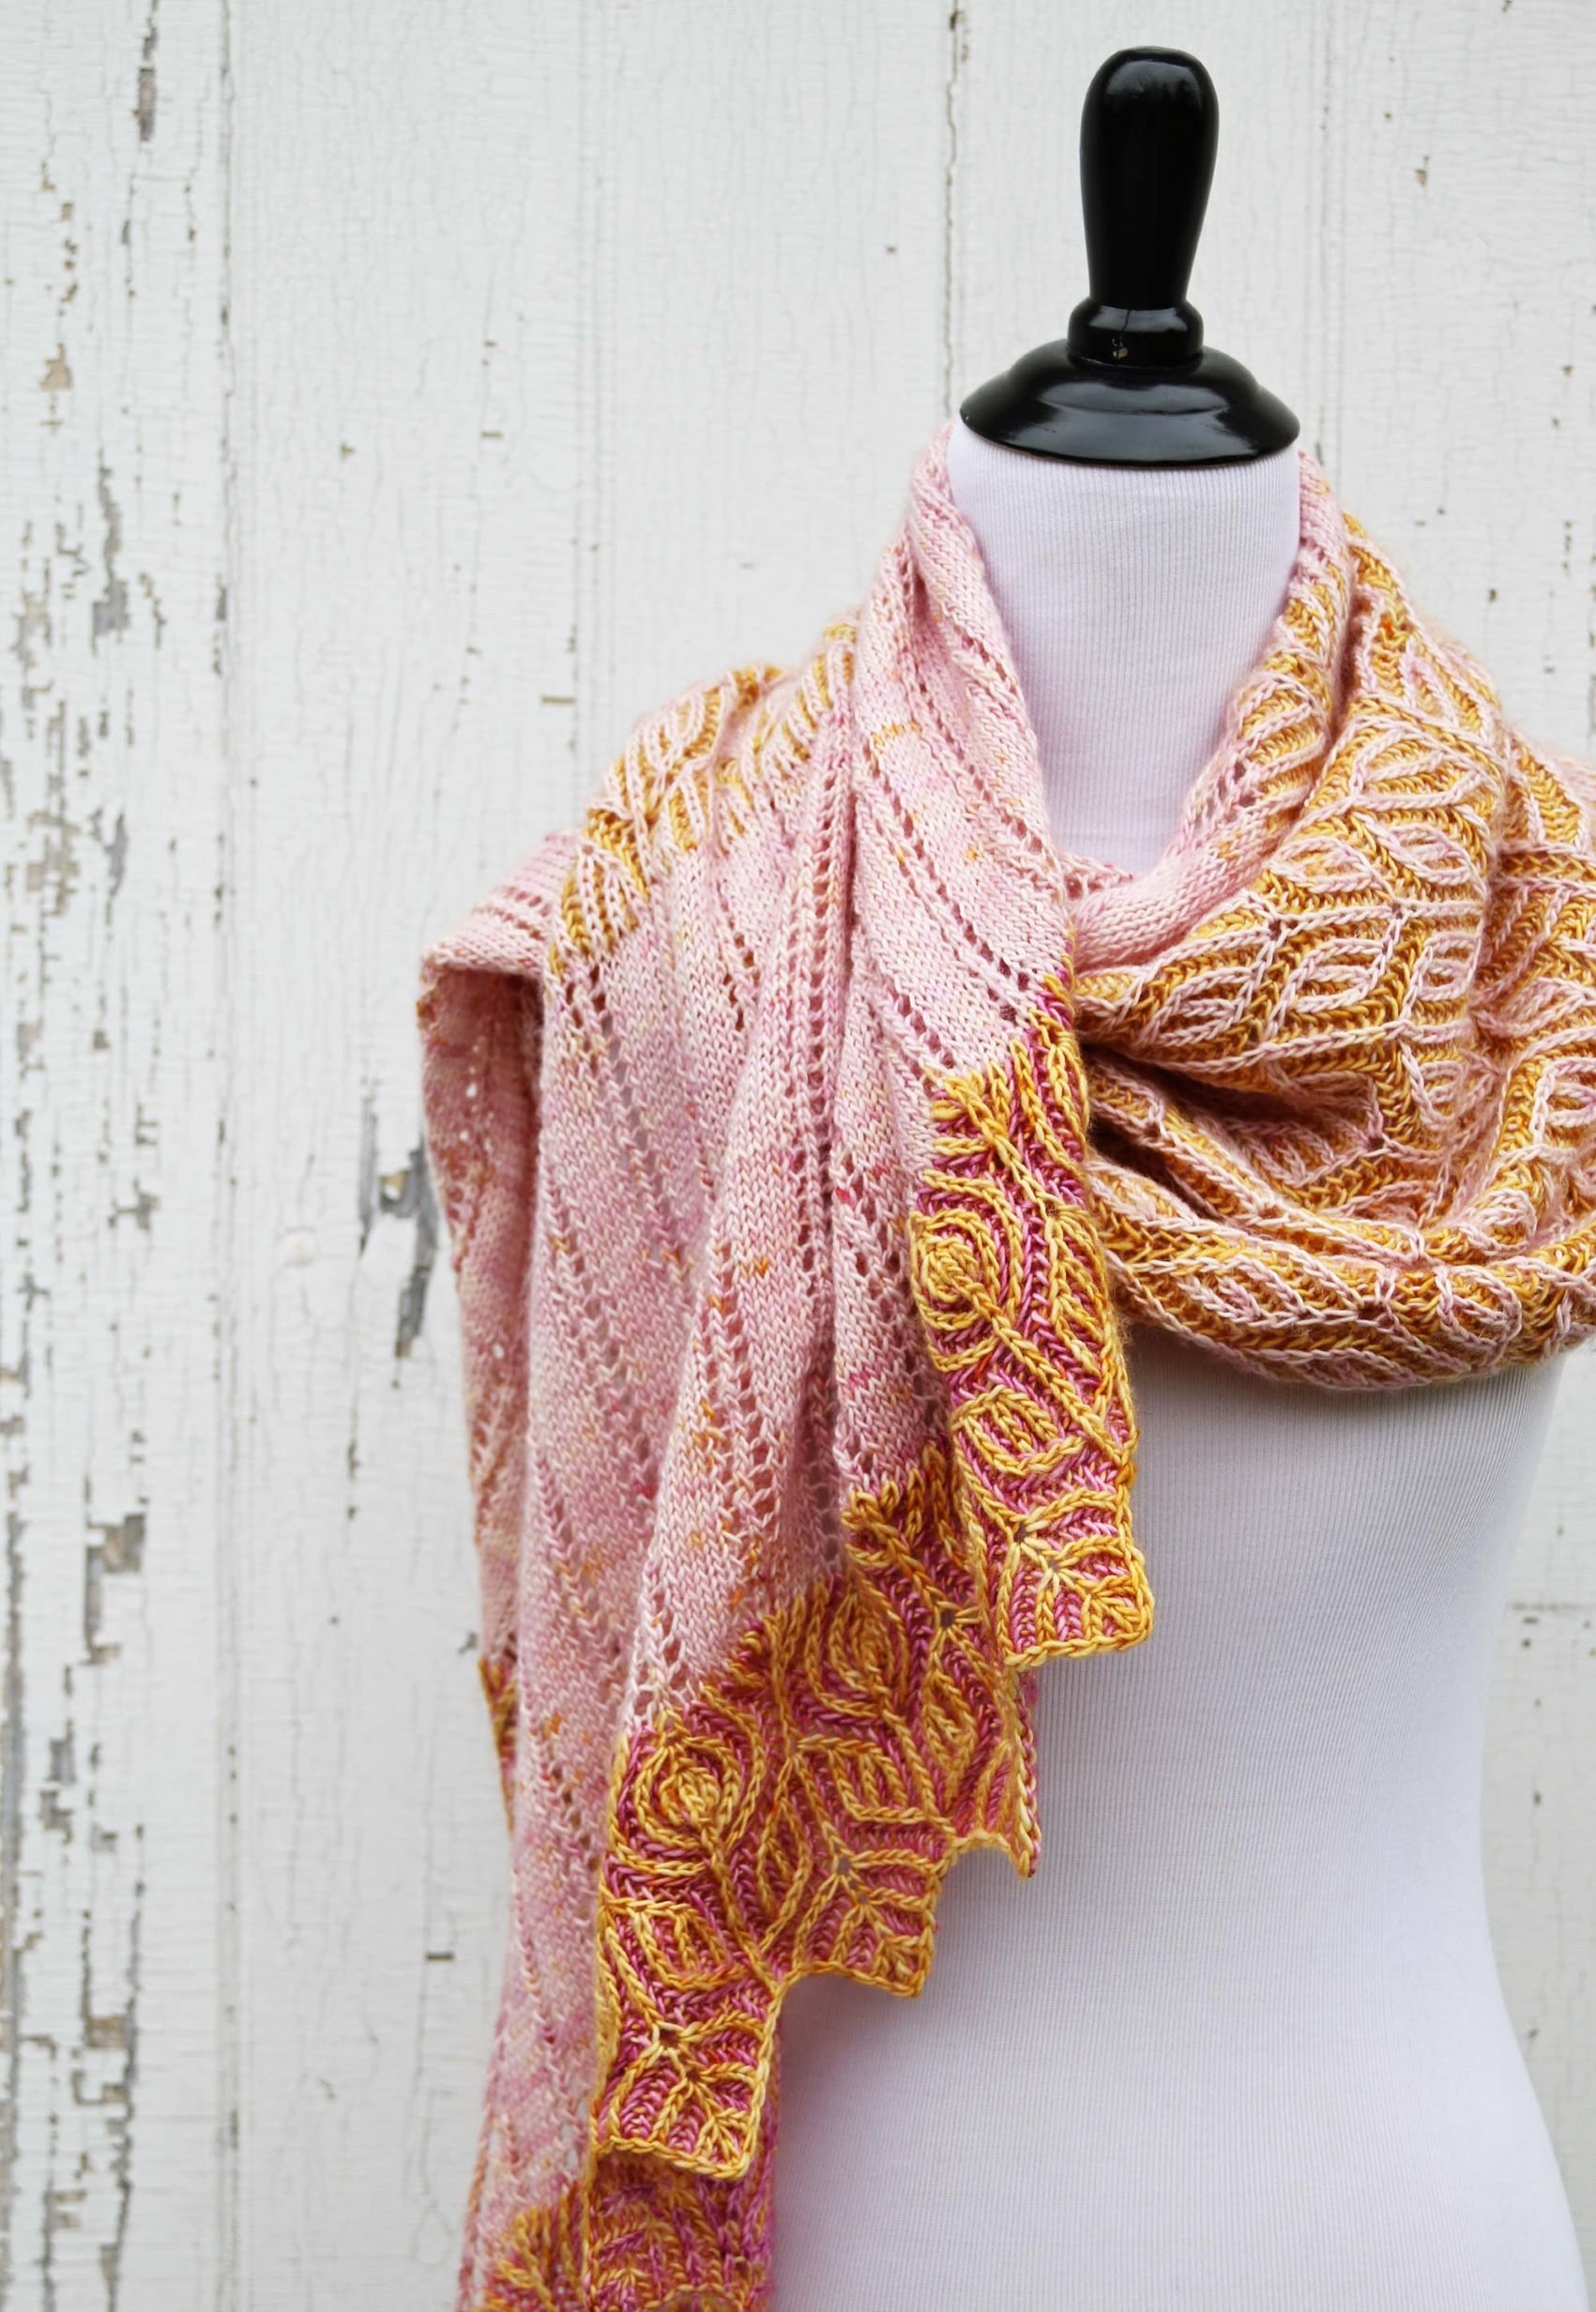 Botanically-inspired Floret shawl/wrap by Amanda Scheuzger.